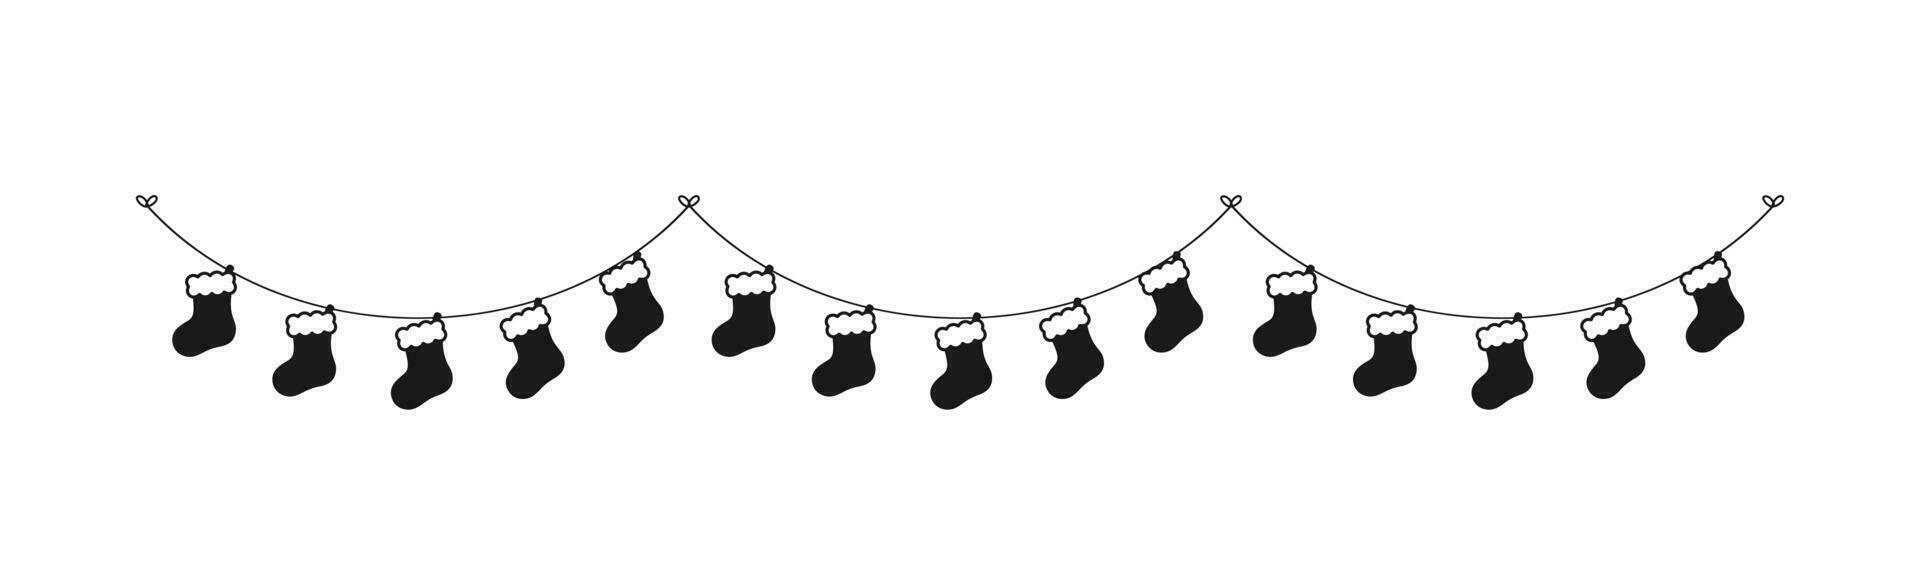 Weihnachten Strumpf Silhouette Girlande Vektor Illustration, Weihnachten Socken Grafik festlich Winter Urlaub Jahreszeit Ammer